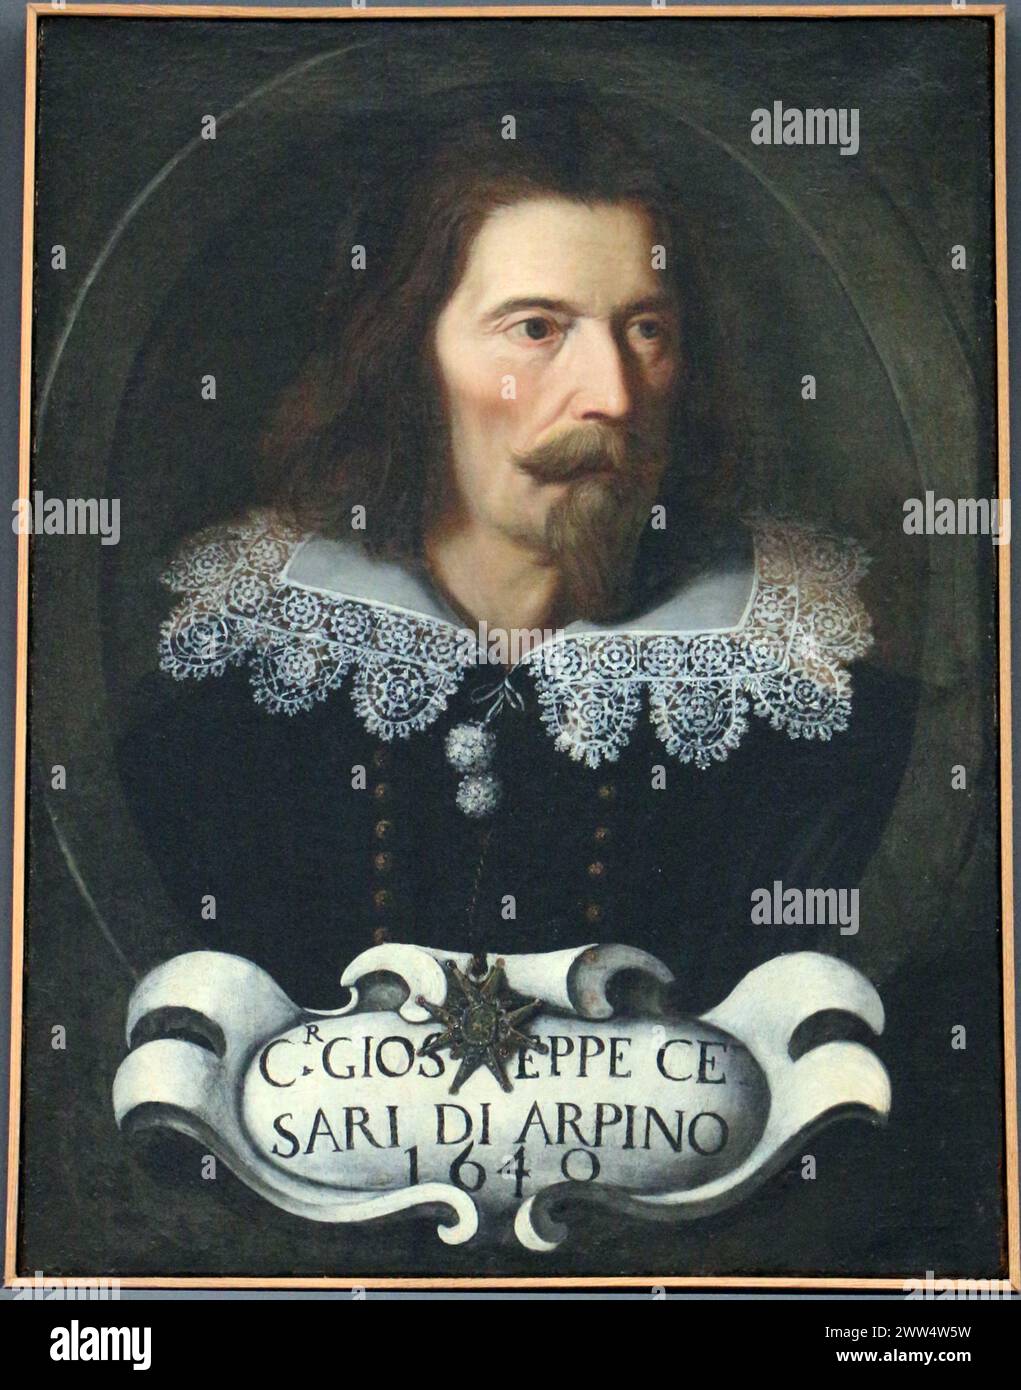 Cavalier d'arpino, autoritratto, 1640, 01 Sailko Stock Photo